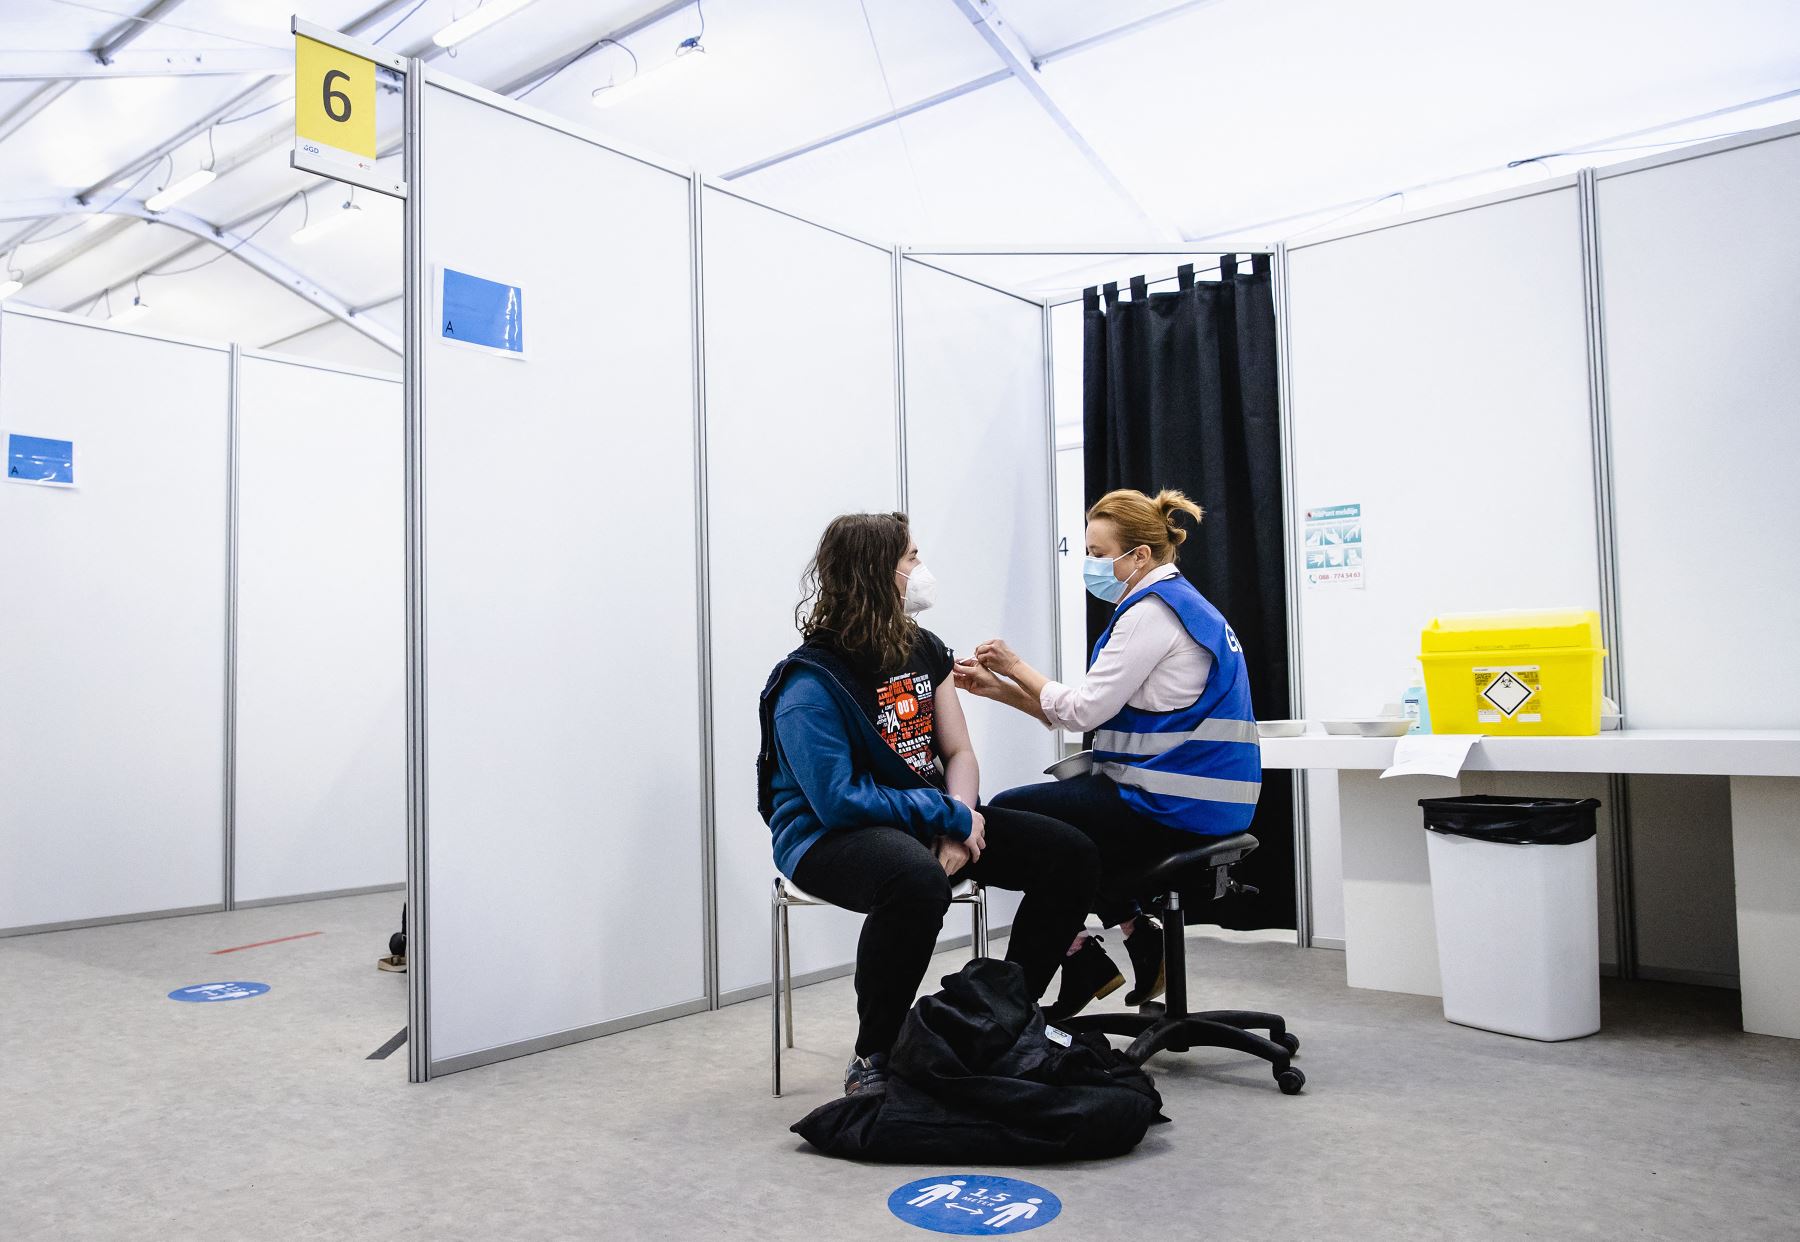 Un trabajador de la salud recibe la vacuna Covid-19 de AstraZeneca en el GGD Haaglanden, en La Haya, el 12 de febrero de 2021. Foto: AFP